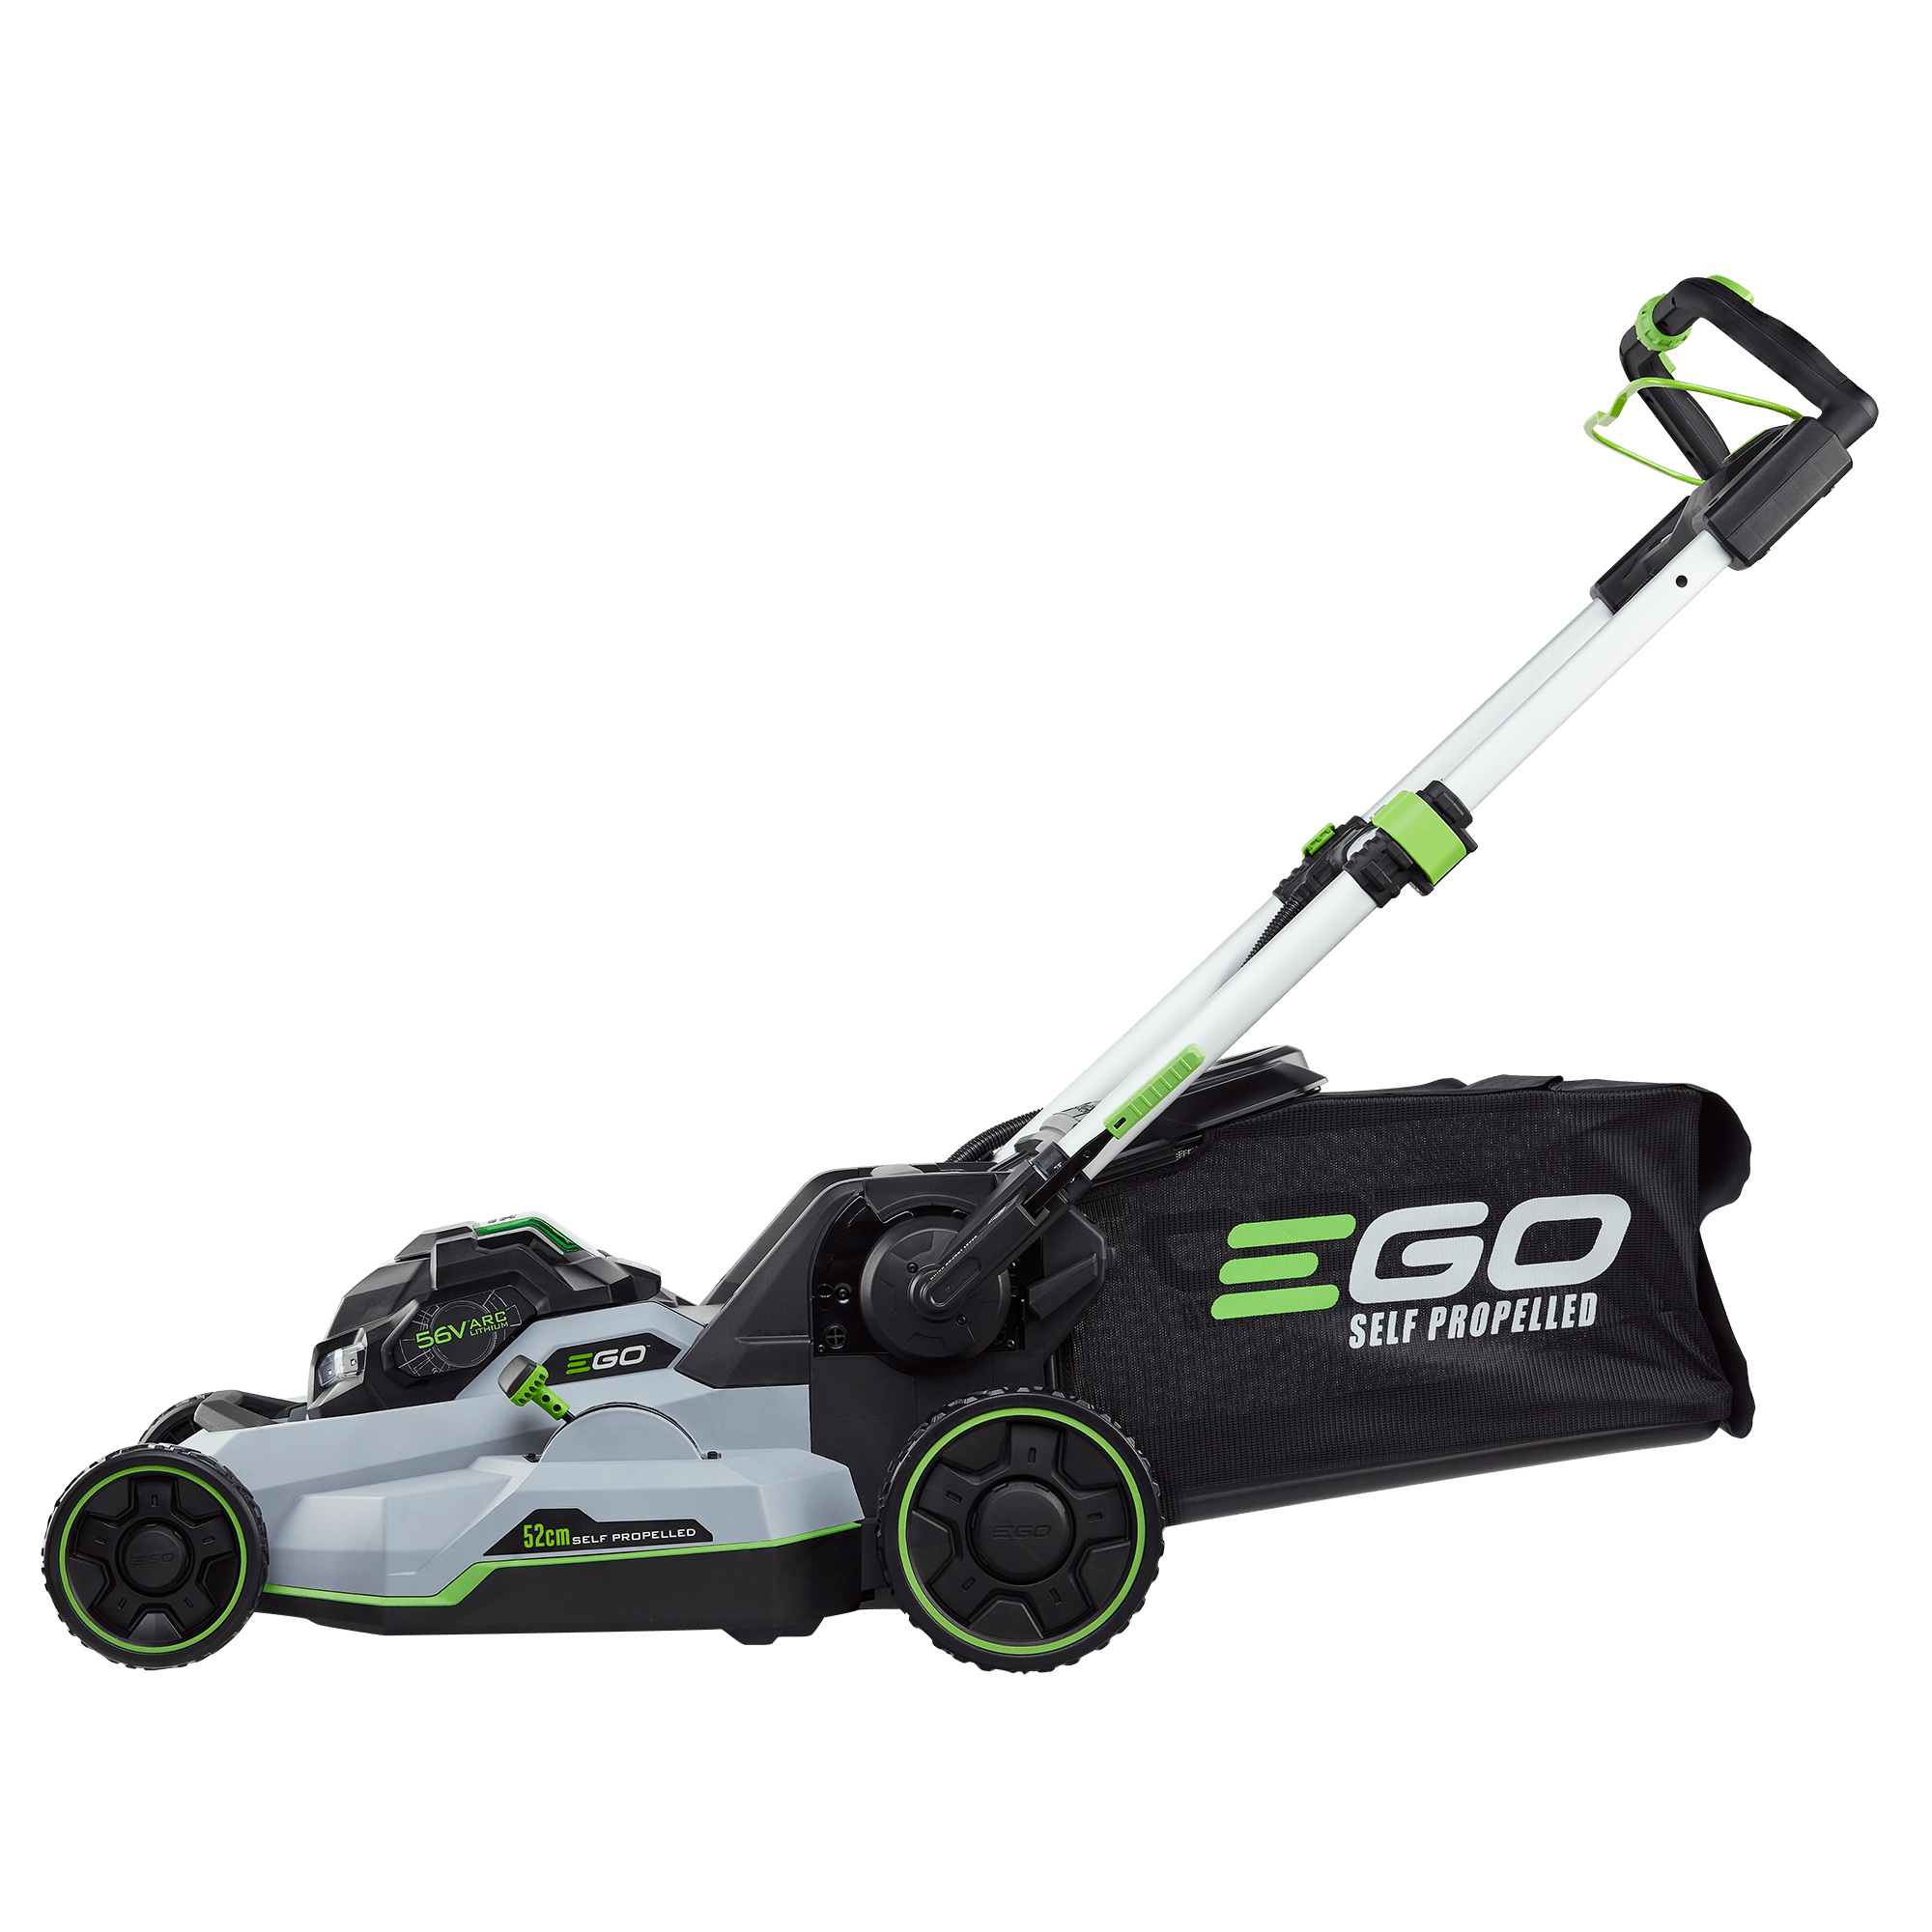 Ego Lawn Mower 52cm LM2135ESP Kit